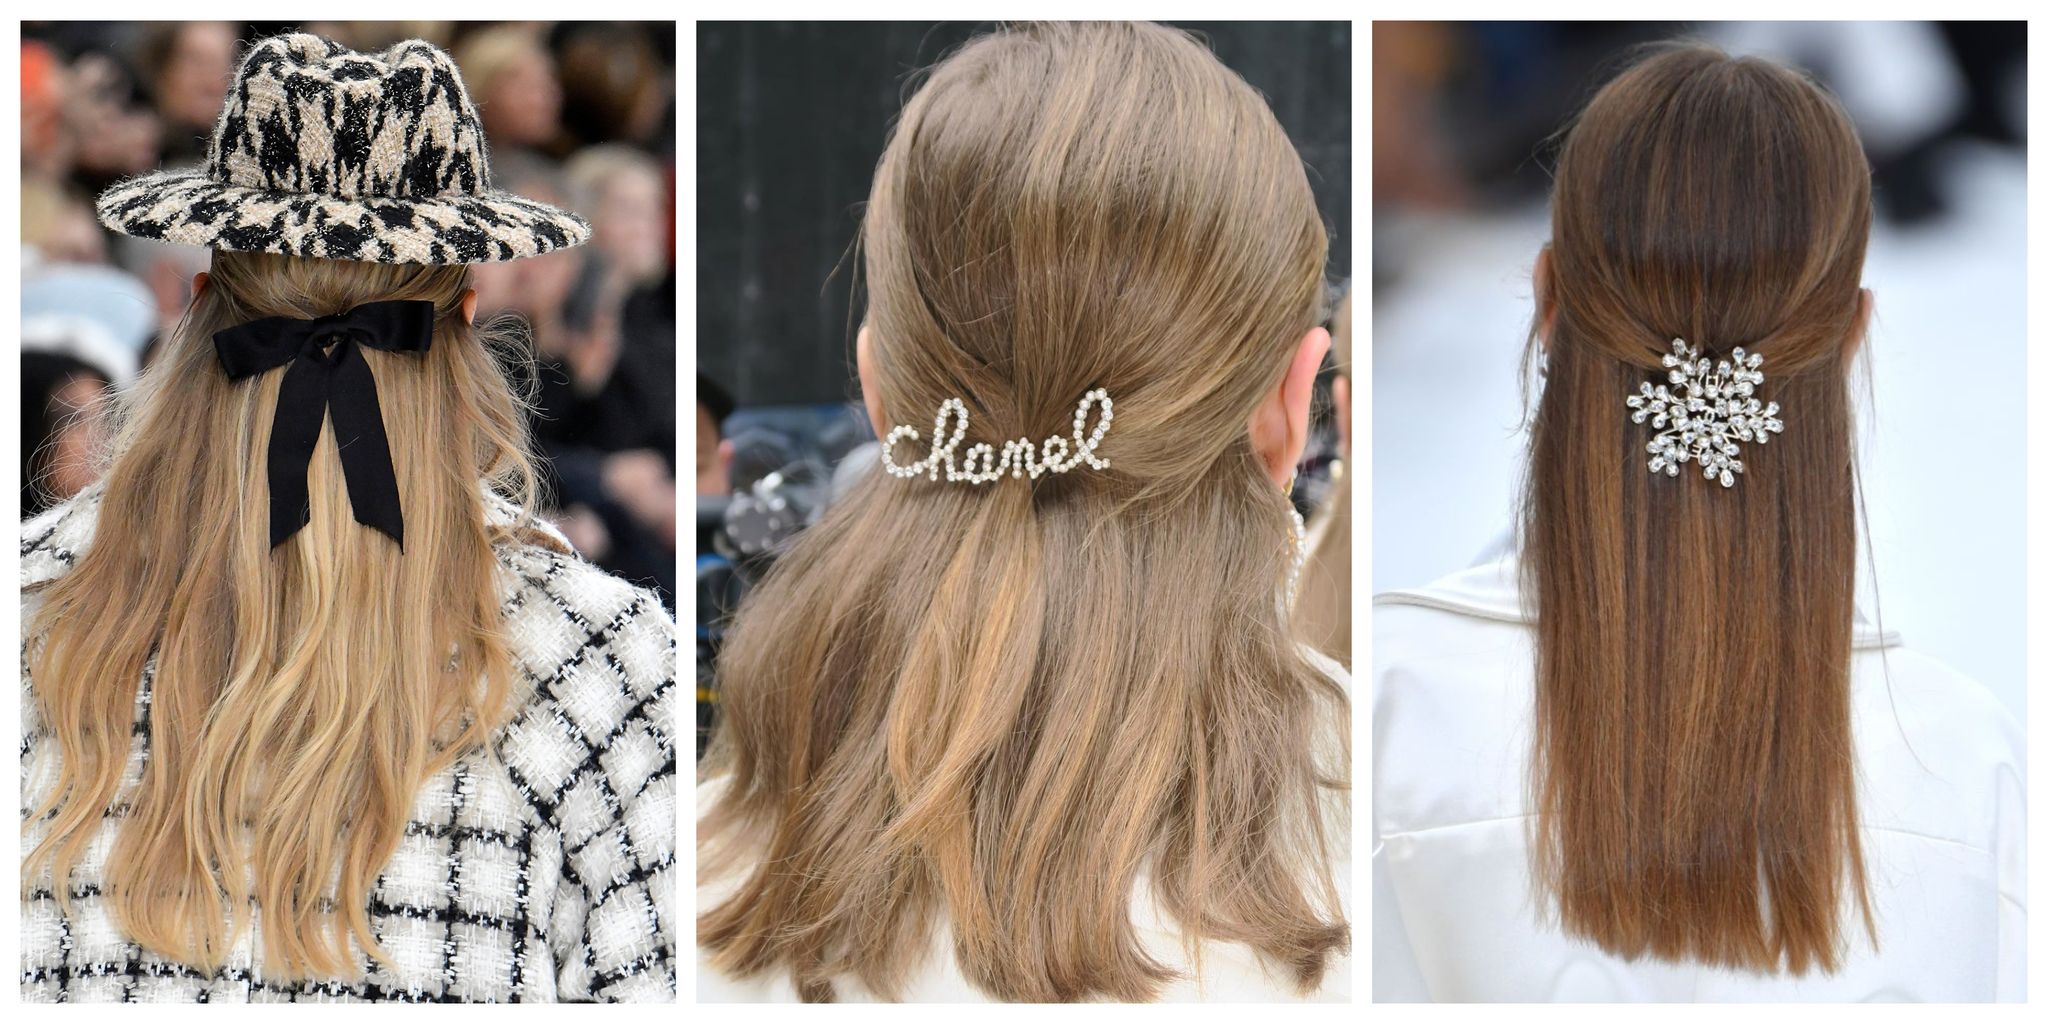 Cómo lucir los accesorios de pelo de tendencia otoño 2019